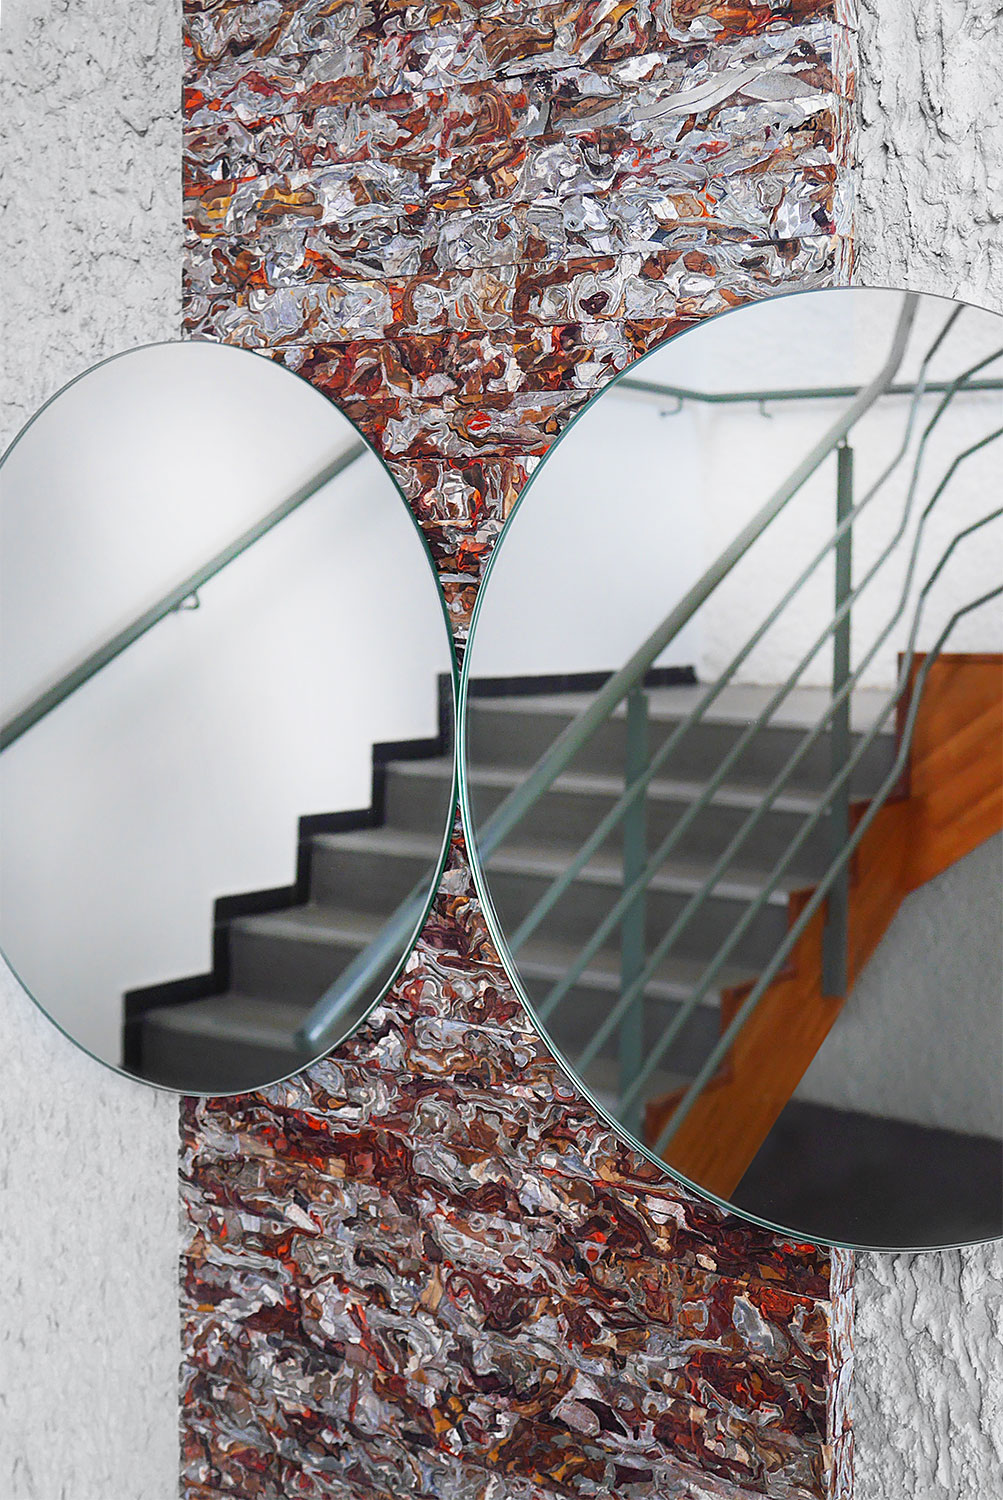 Structural Skin miroir reconstitué par Jorge Penadés